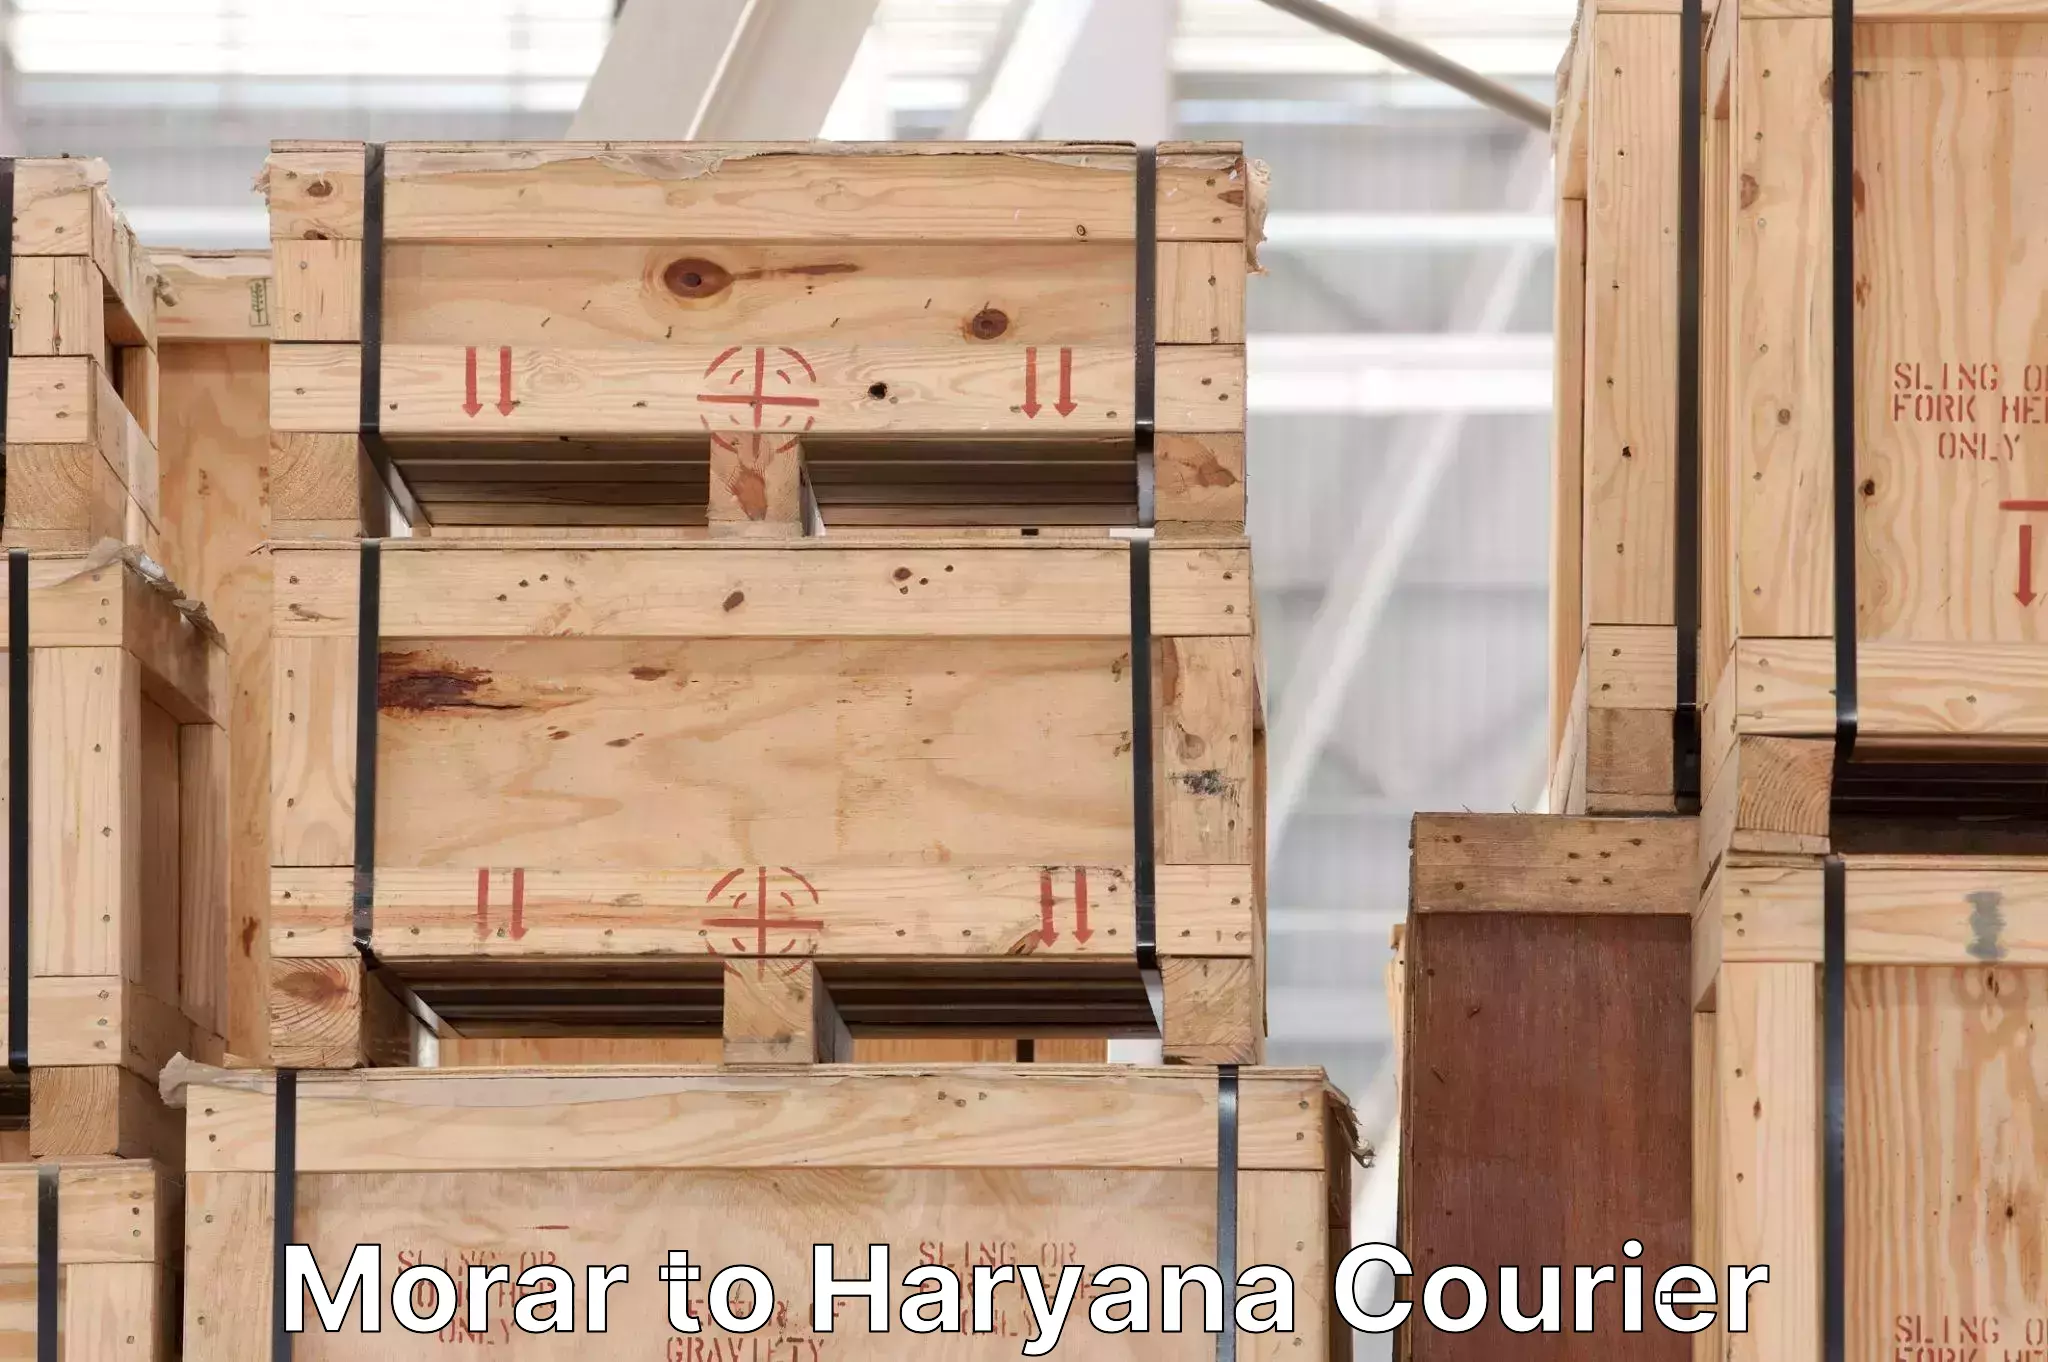 Cargo delivery service Morar to Haryana